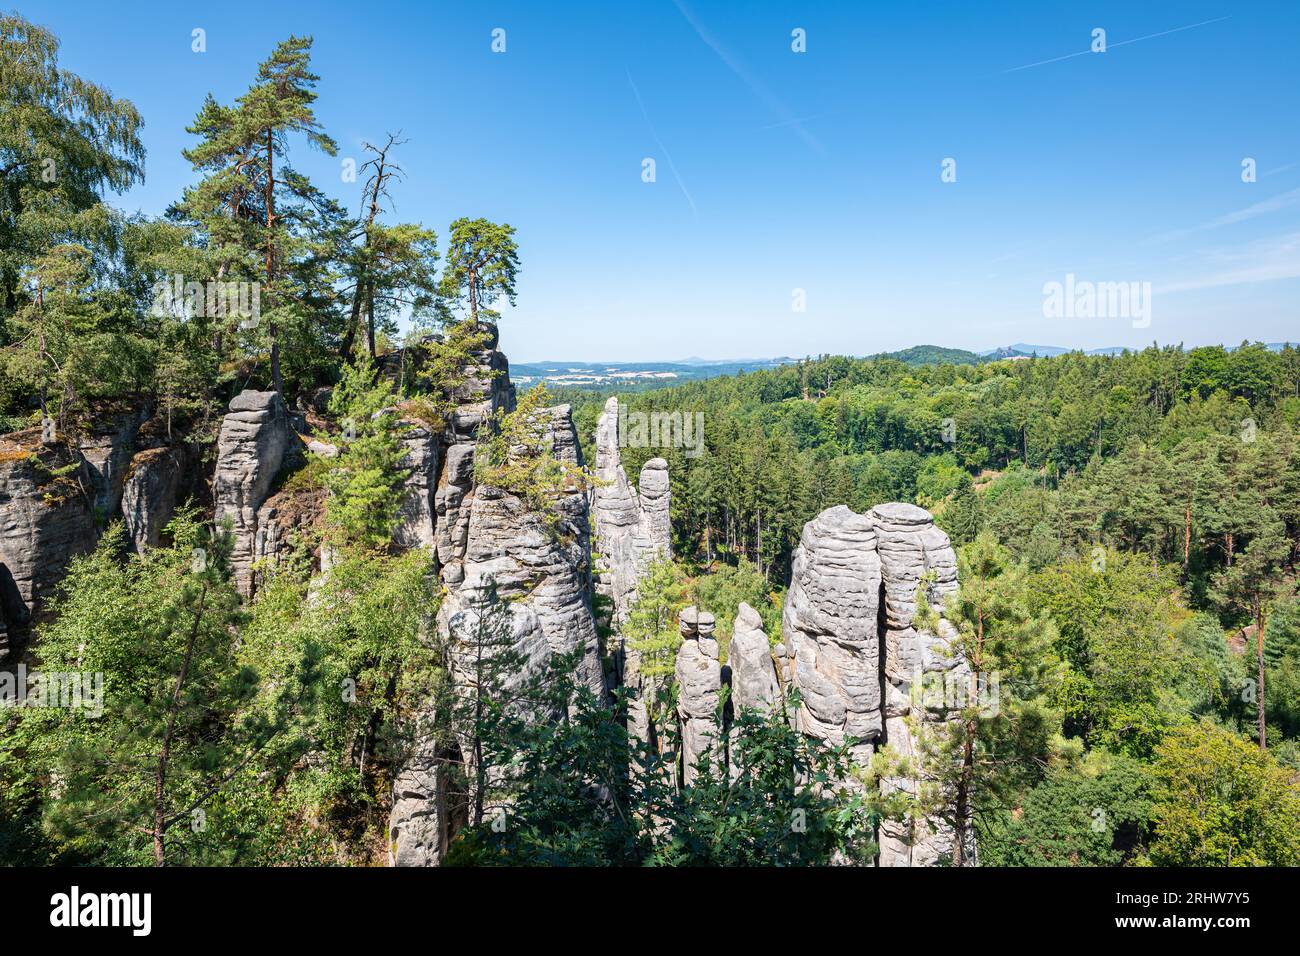 Scenic view of the rock towers of Prachov Rocks (Czech: Prachovské skály) in Bohemia, Czech Republic. Stock Photo